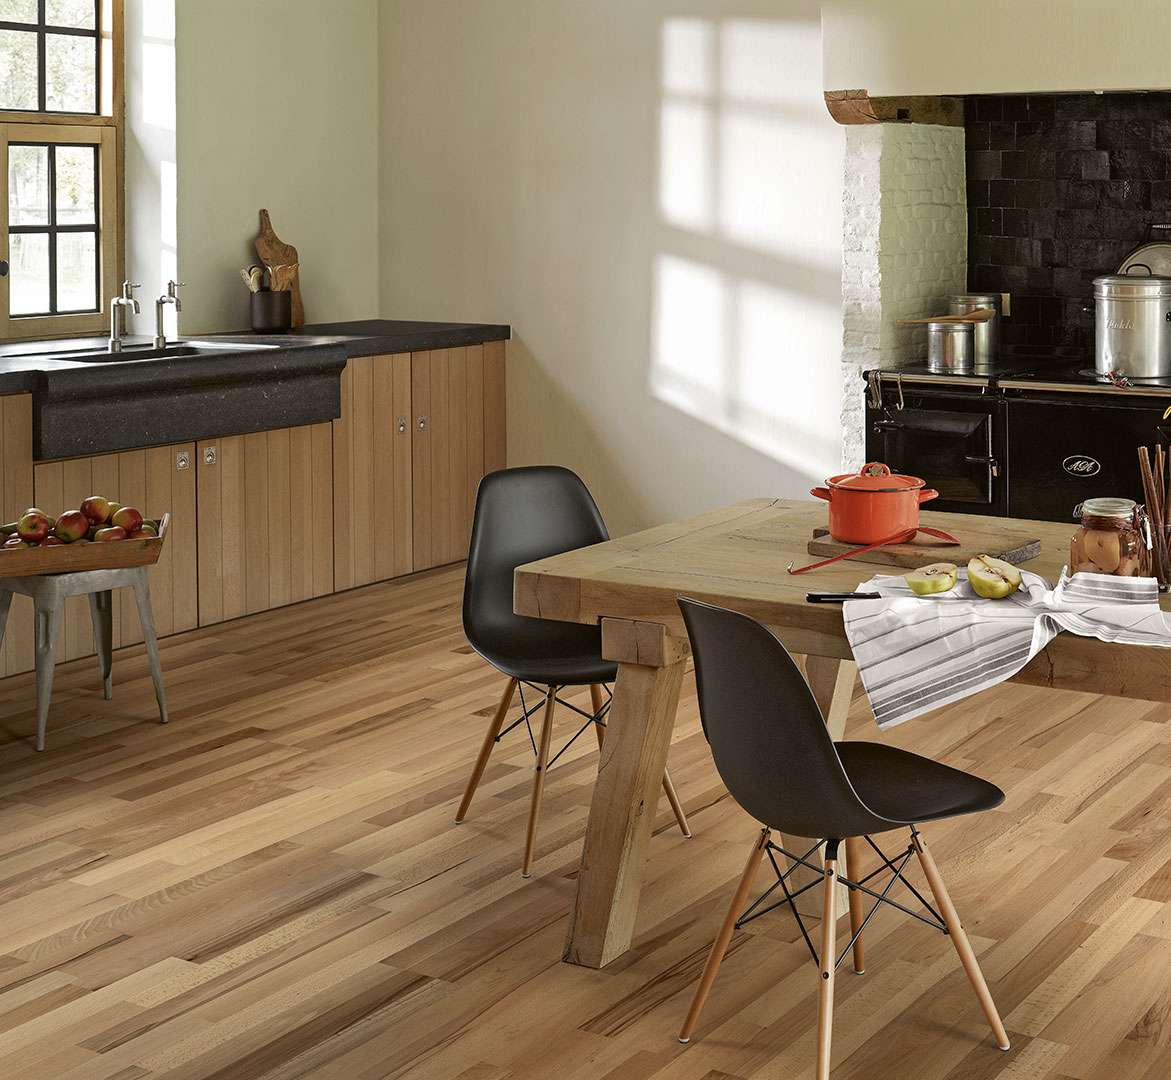 PARADOR Classic 3060 (Buk - Living- lak) 1518103 - dřevěná třívrstvá podlaha